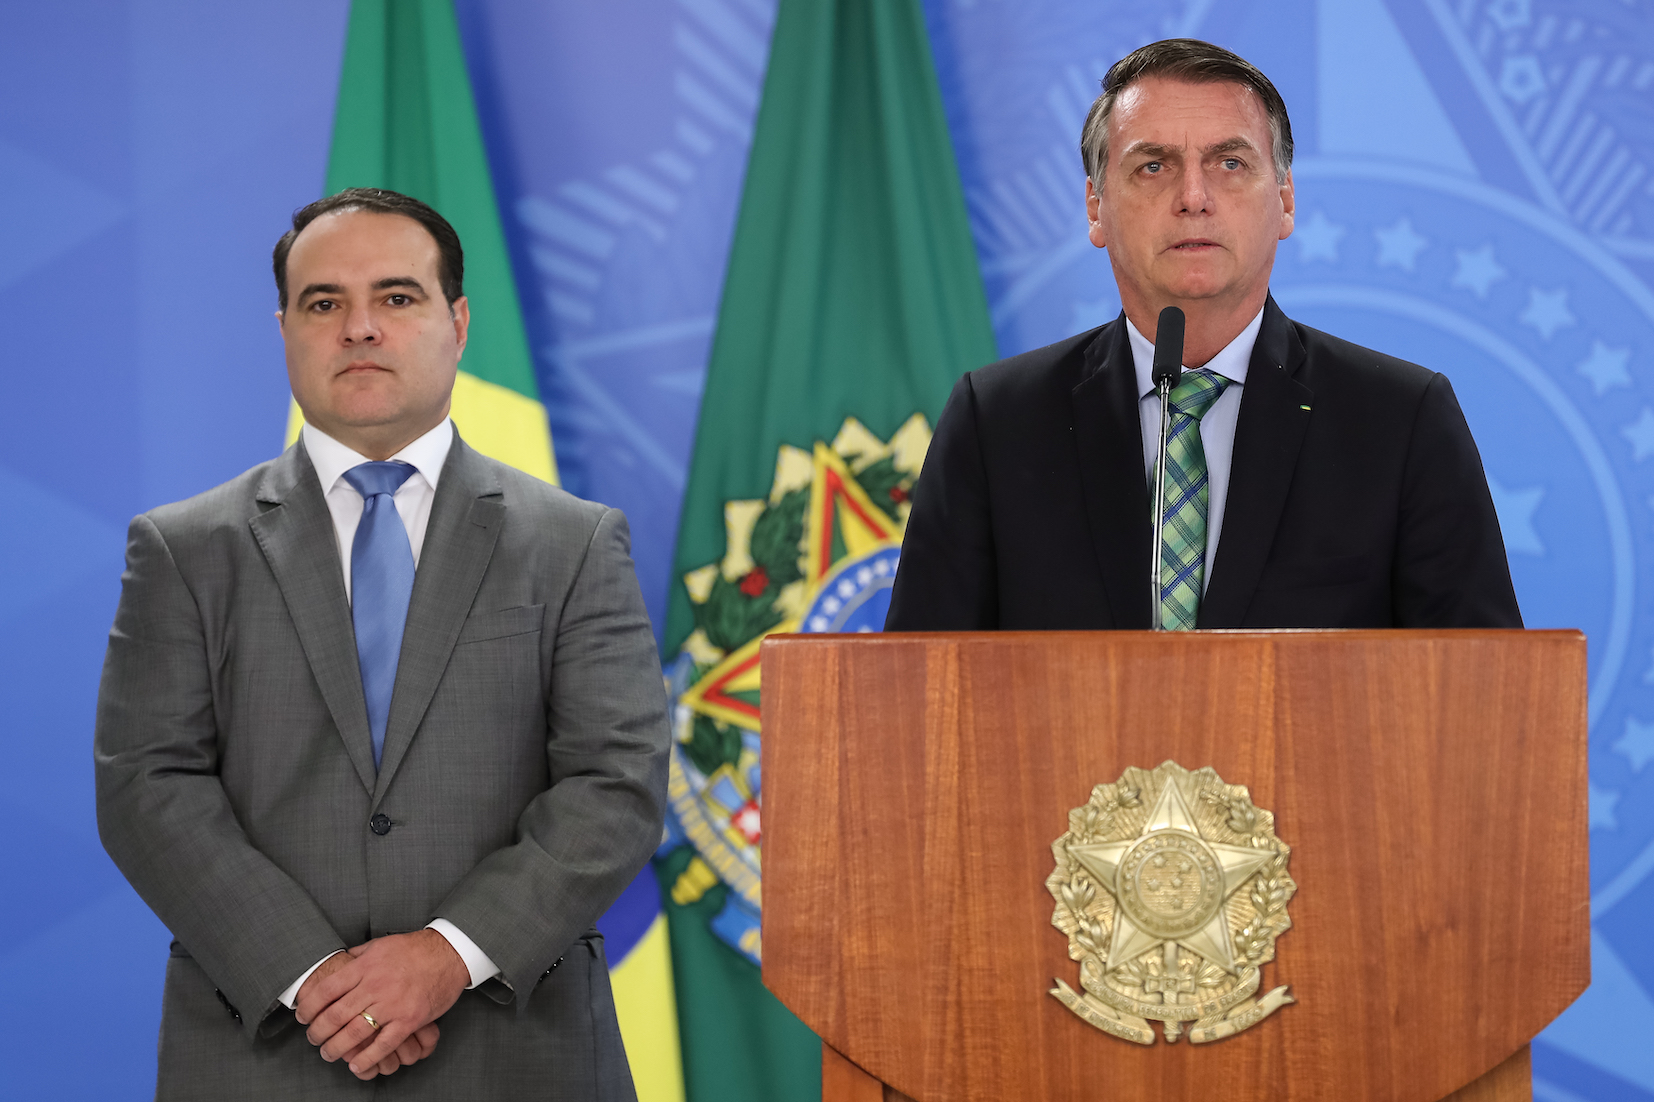 Bolsonar and de Oliveira